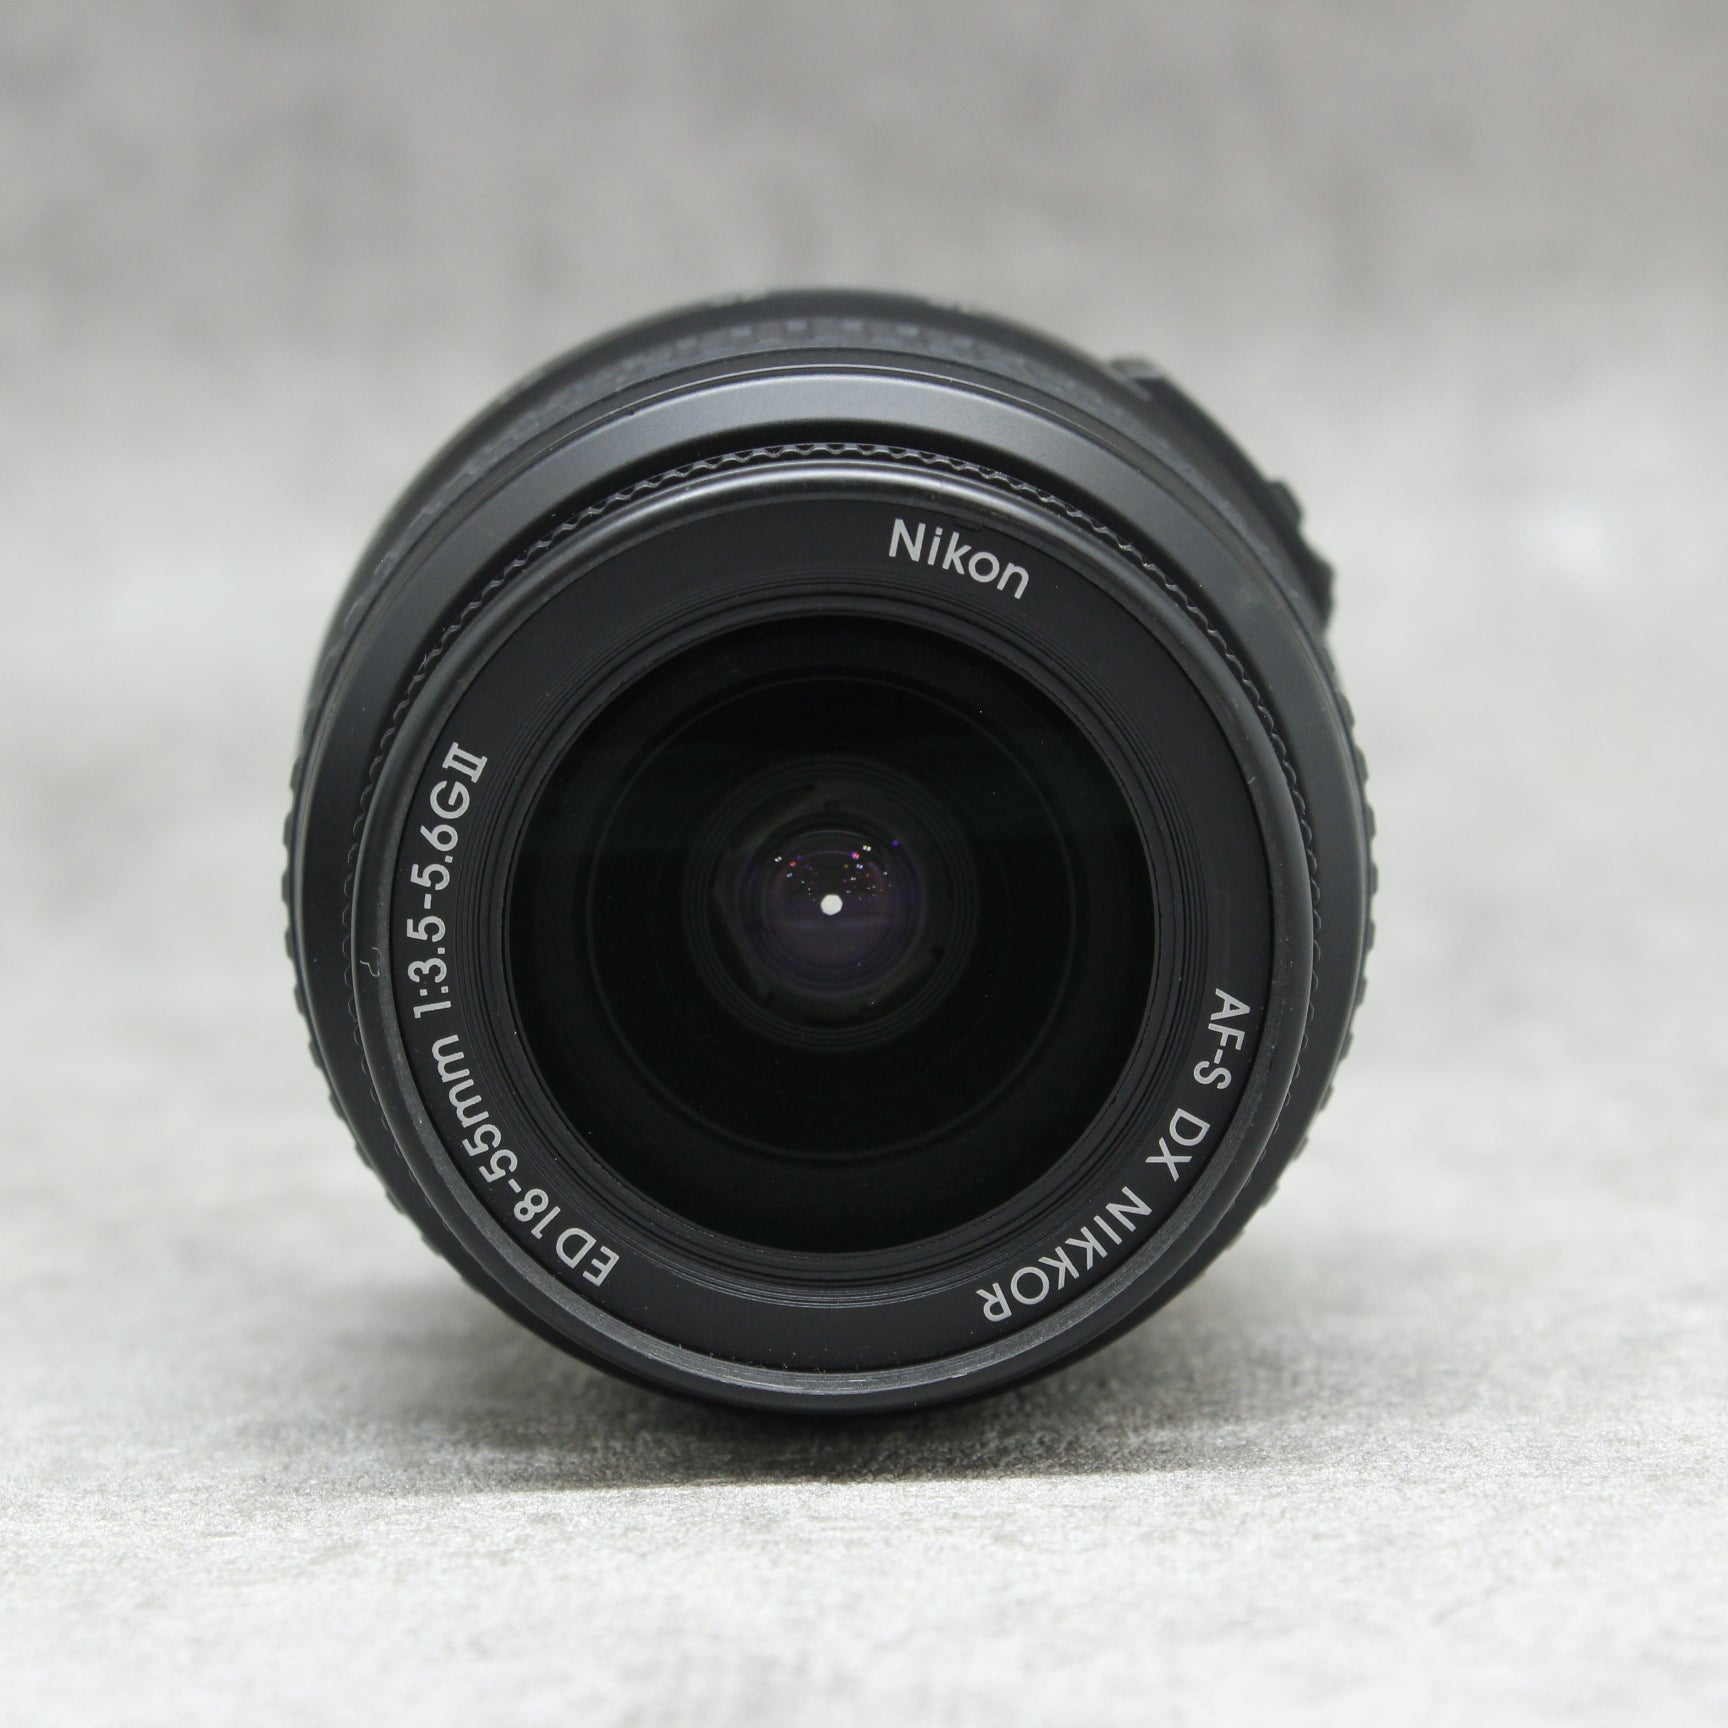 中古品 Nikon D40x + 18-55mm F3.5-5.6【7月11日(火)のYouTube生配信でご紹介】